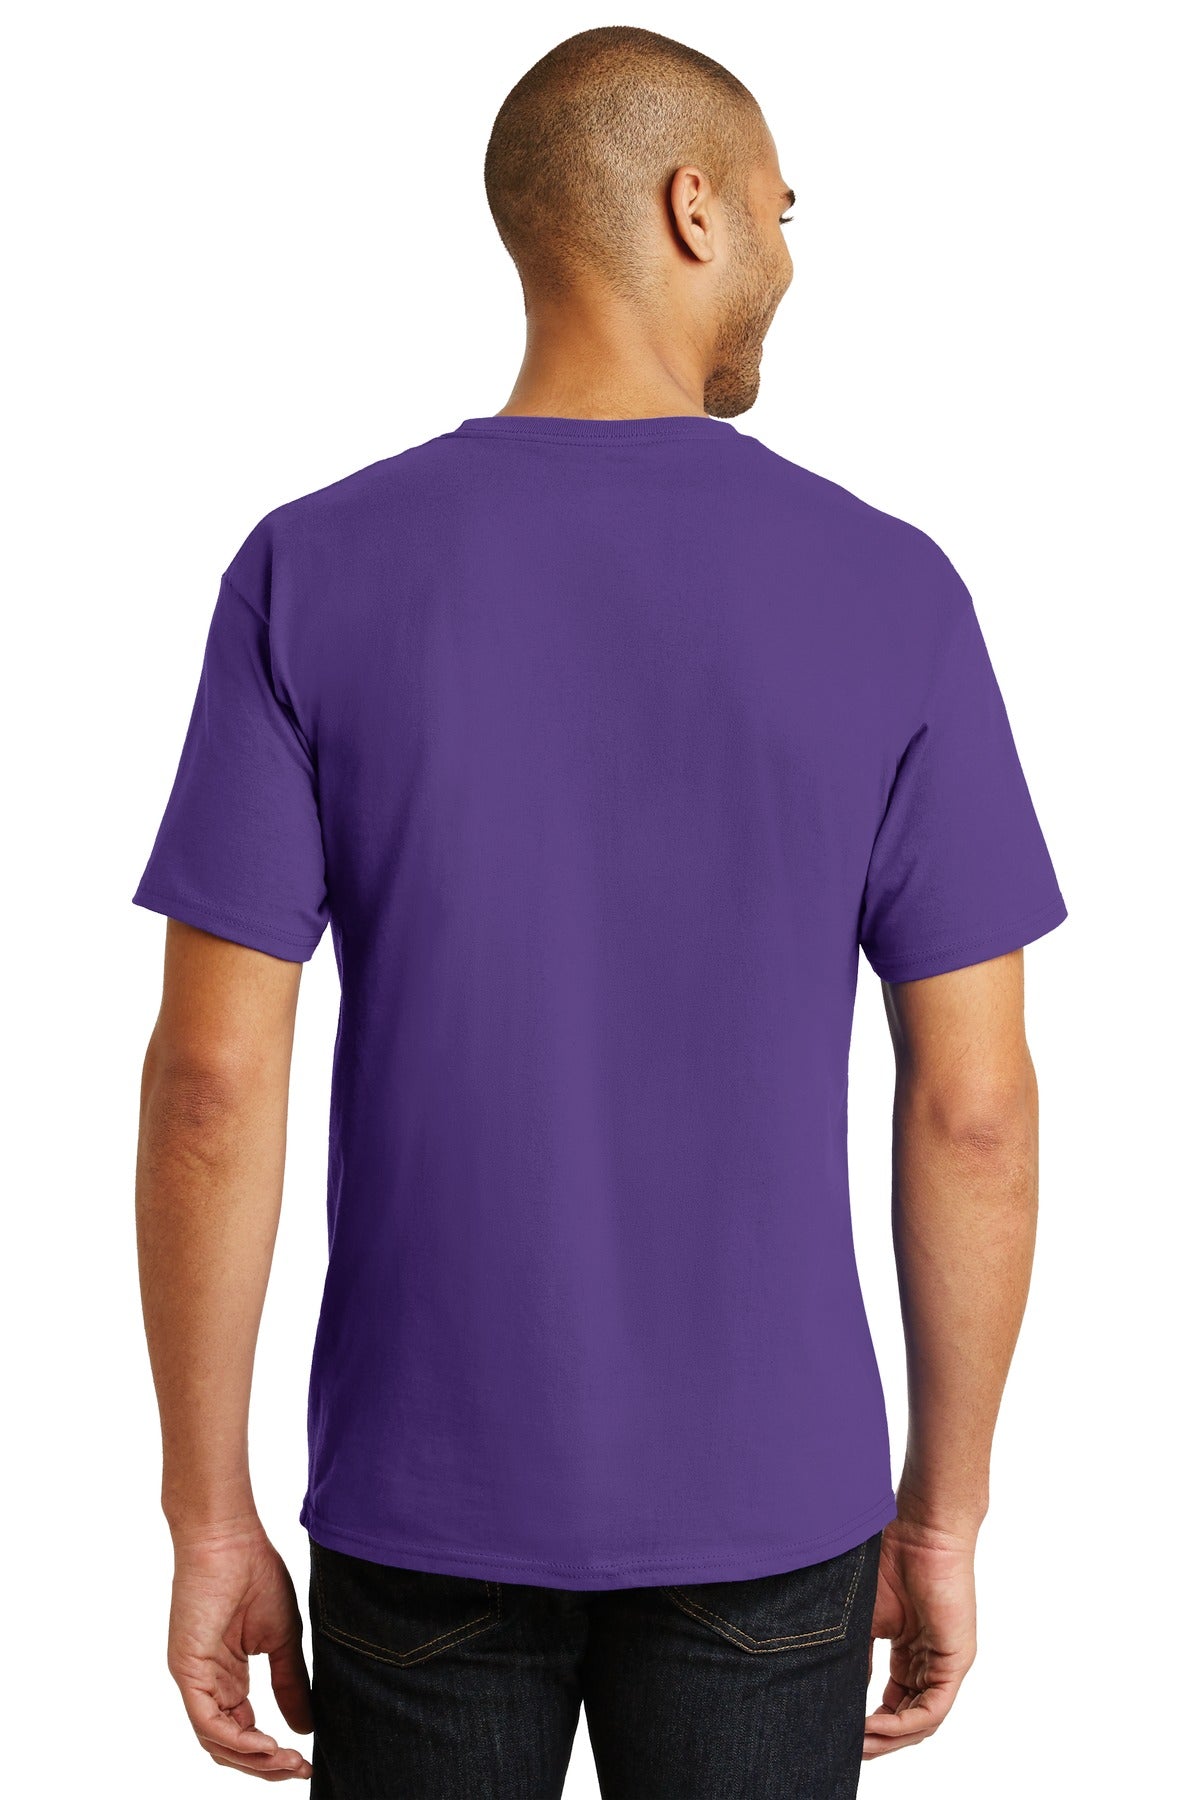 Hanes® - Authentic 100% Cotton T-Shirt. 5250 [Purple] - DFW Impression